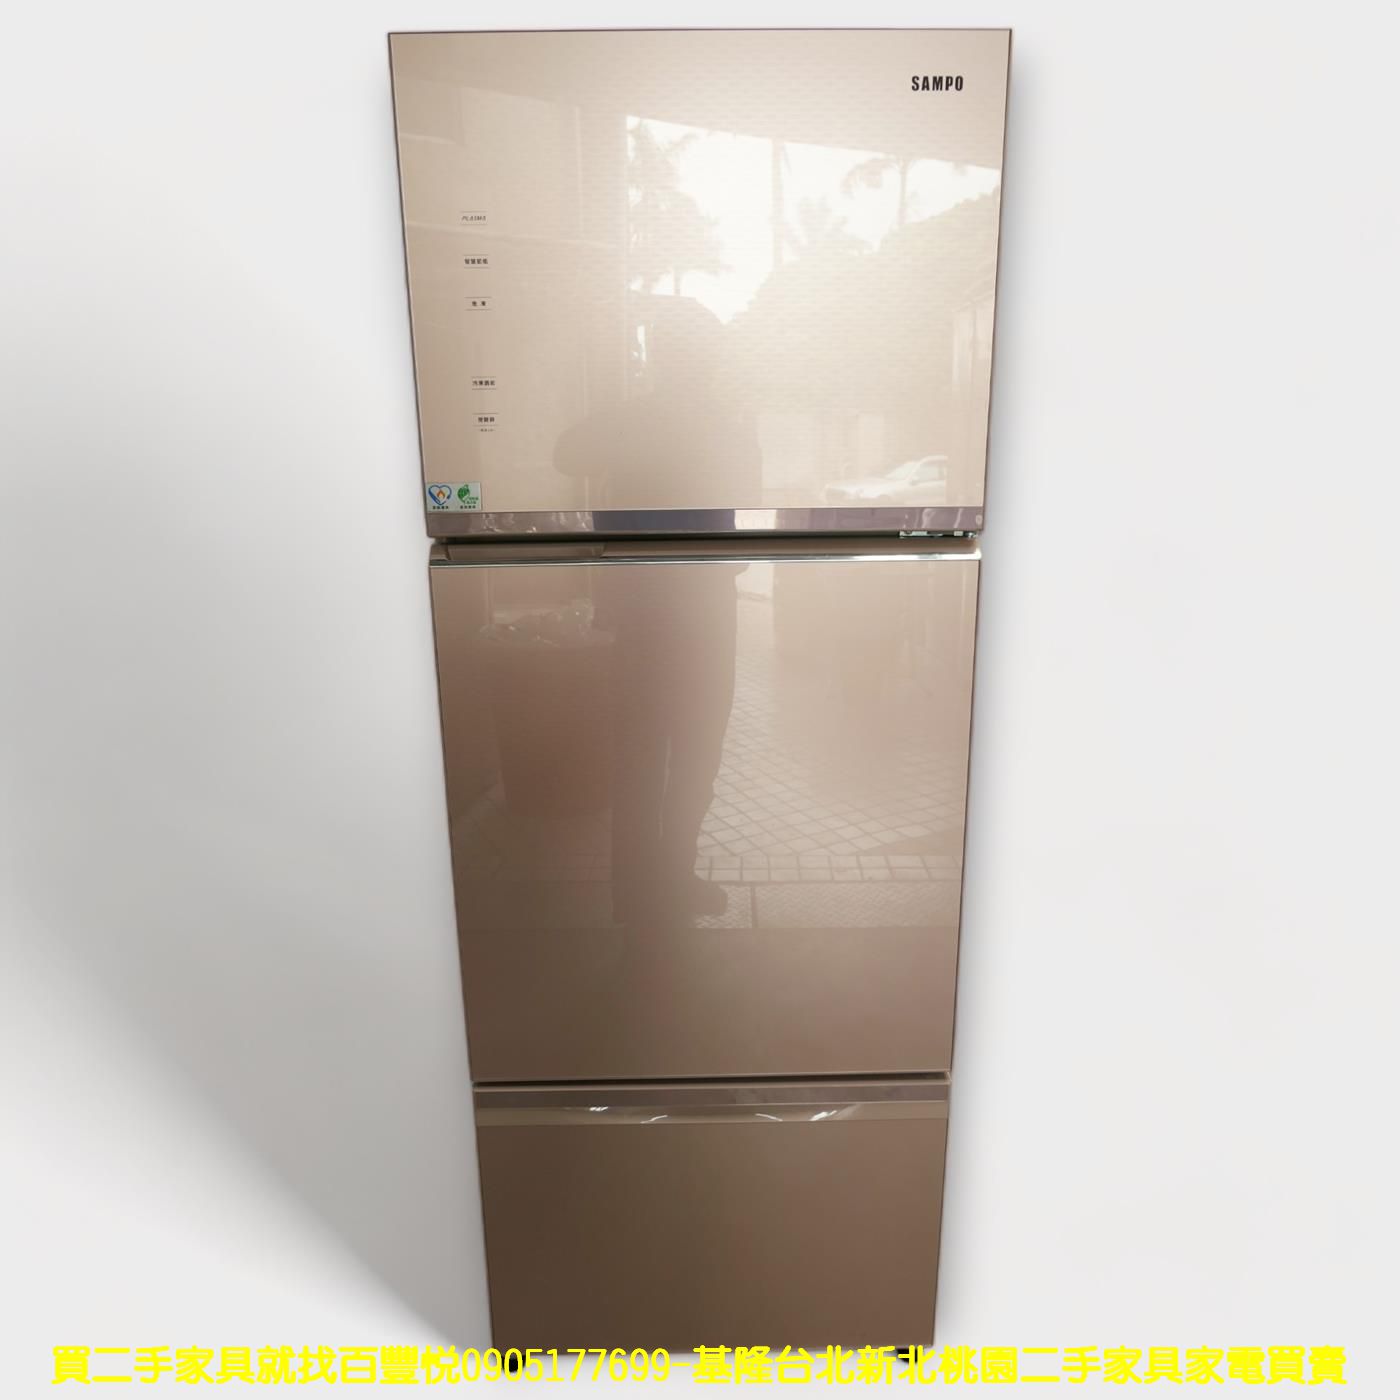 二手冰箱 聲寶 455公升 變頻一級 三門冰箱 大冰箱 大家電 中古電器 中古家電 1